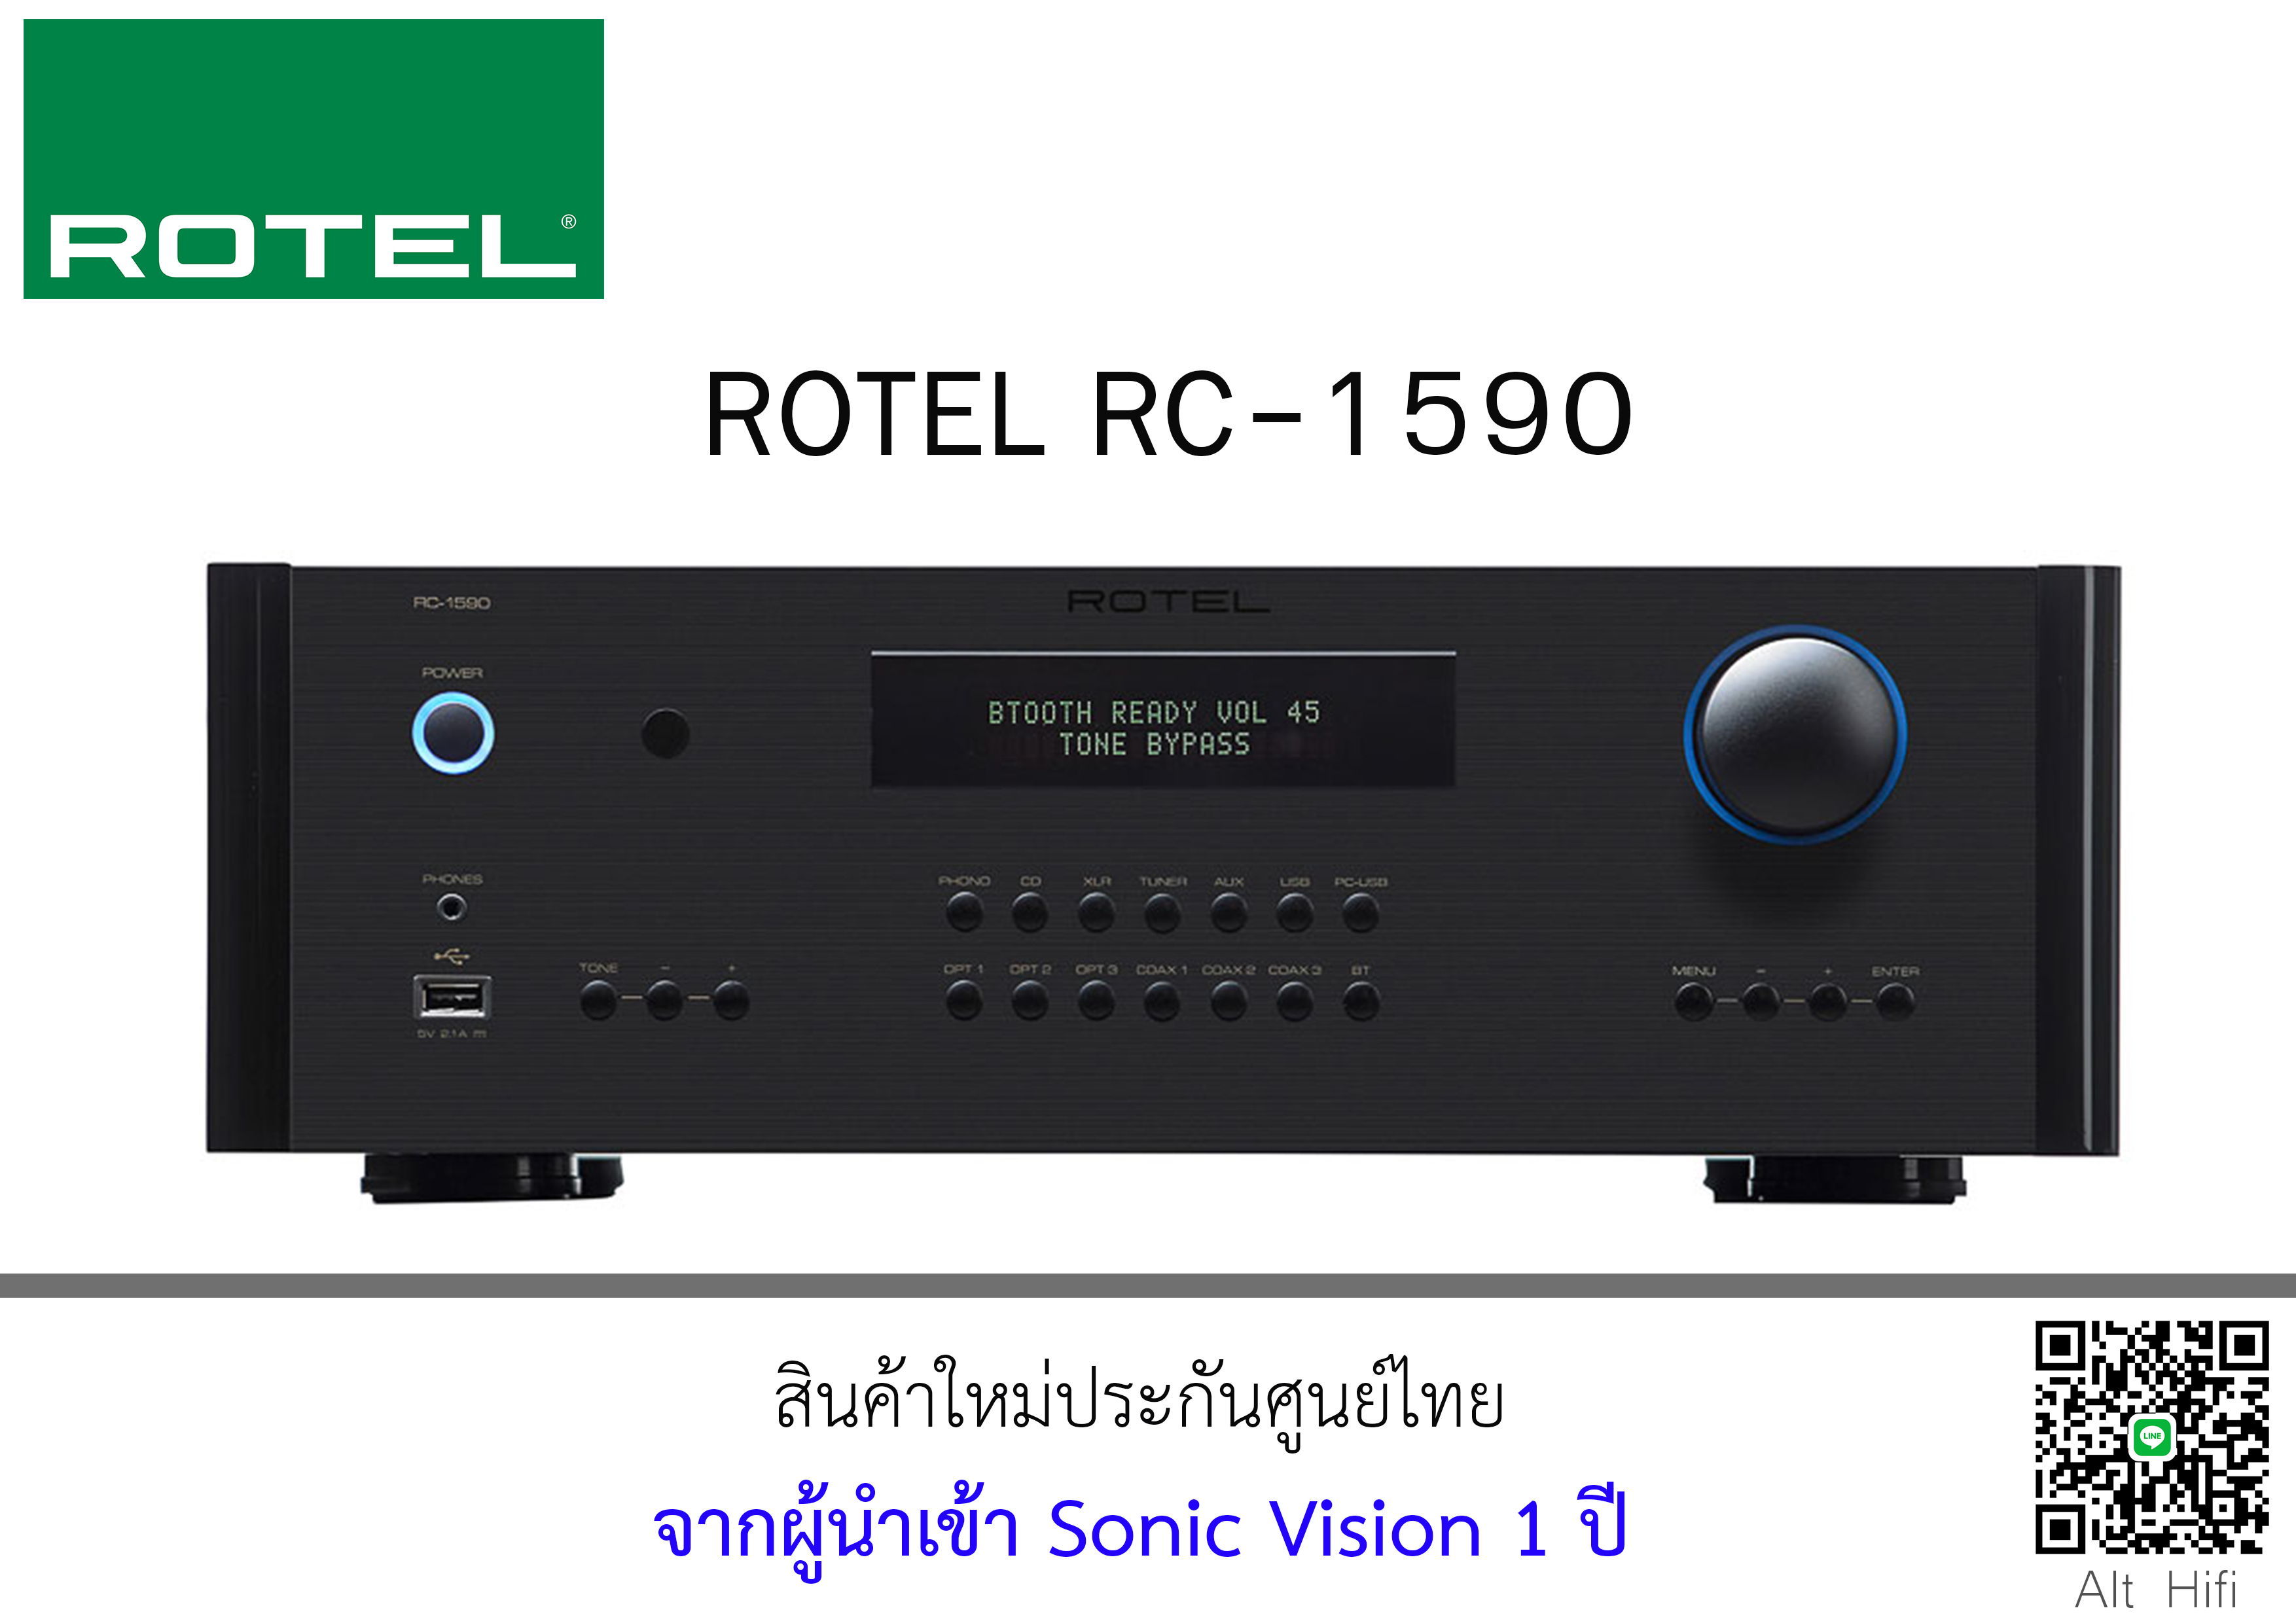 ROTEL RC-1590 Pre-Amplifier